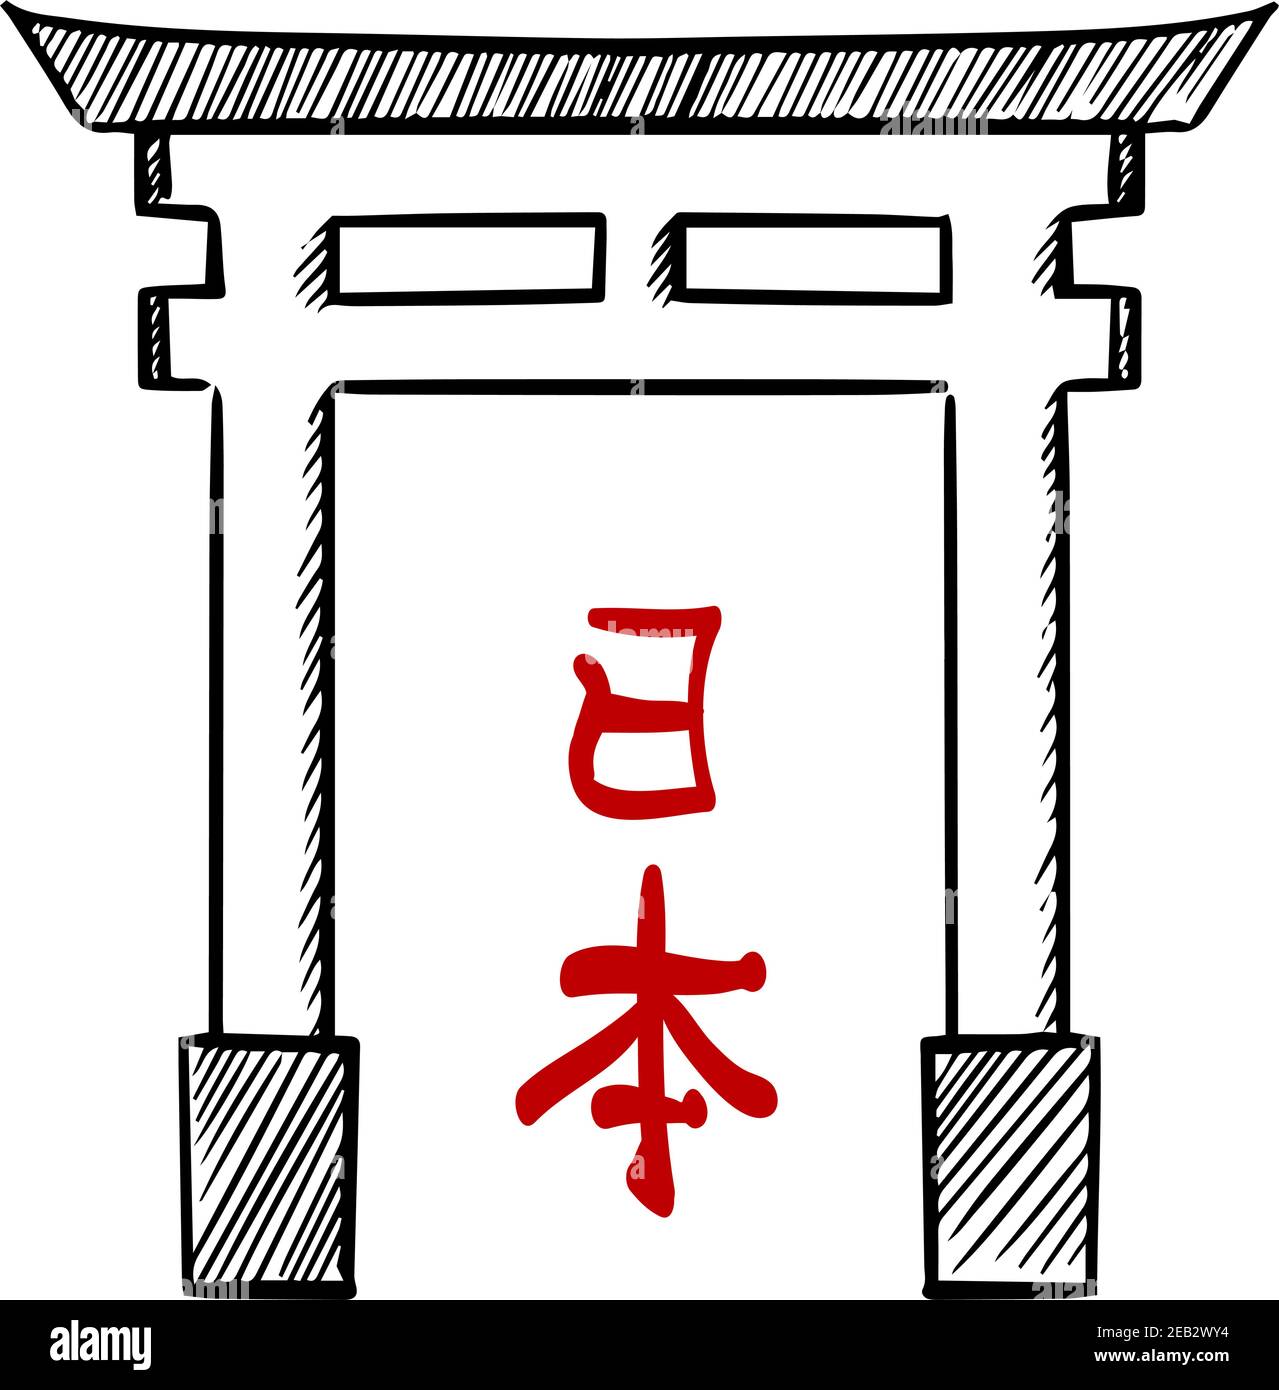 Japanische traditionelle hölzerne heilige Tor torii, für asiatische Kultur oder Reise Thema Design. Skizze Stock Vektor